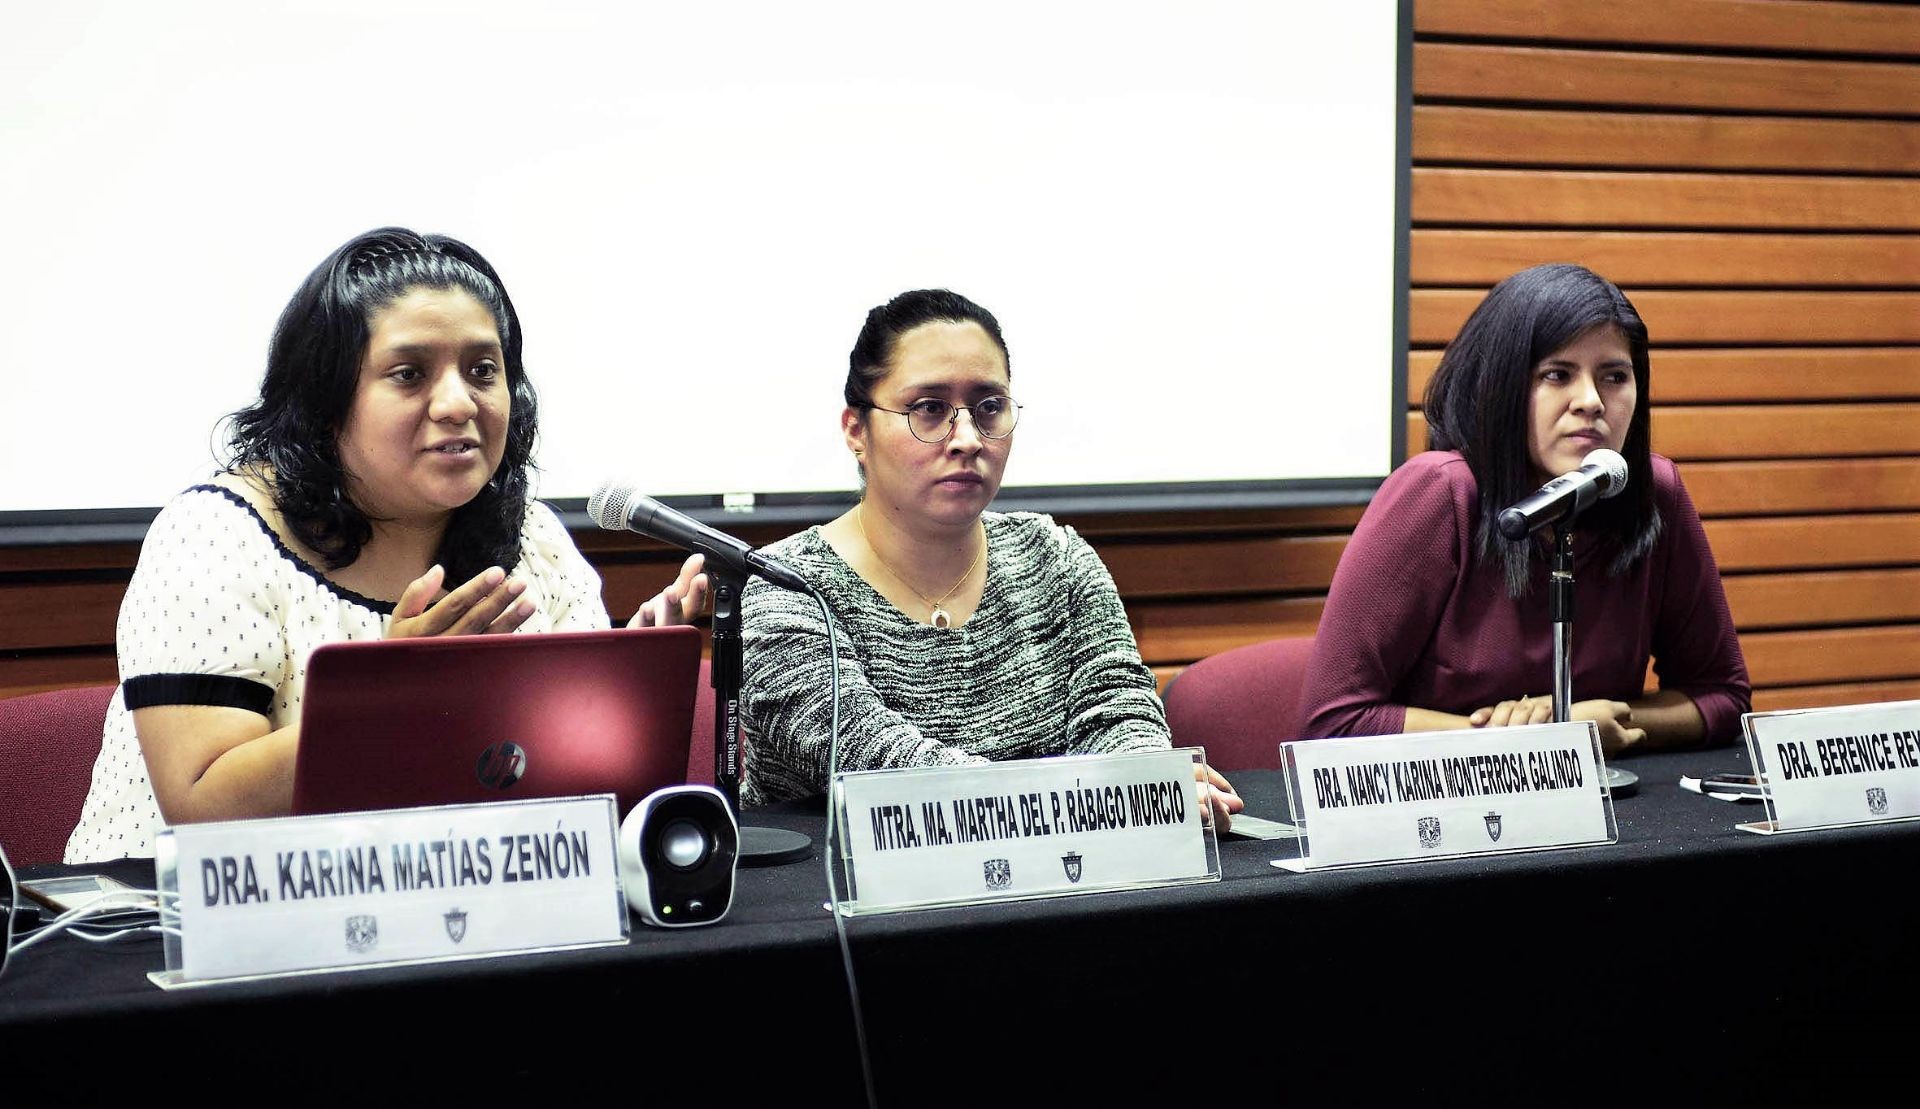 Nancy Monterrosa Galindo, Karina Matías Zenón y Berenice Reyes Aguilar visitaron la Facultad de Derecho de la UNAM